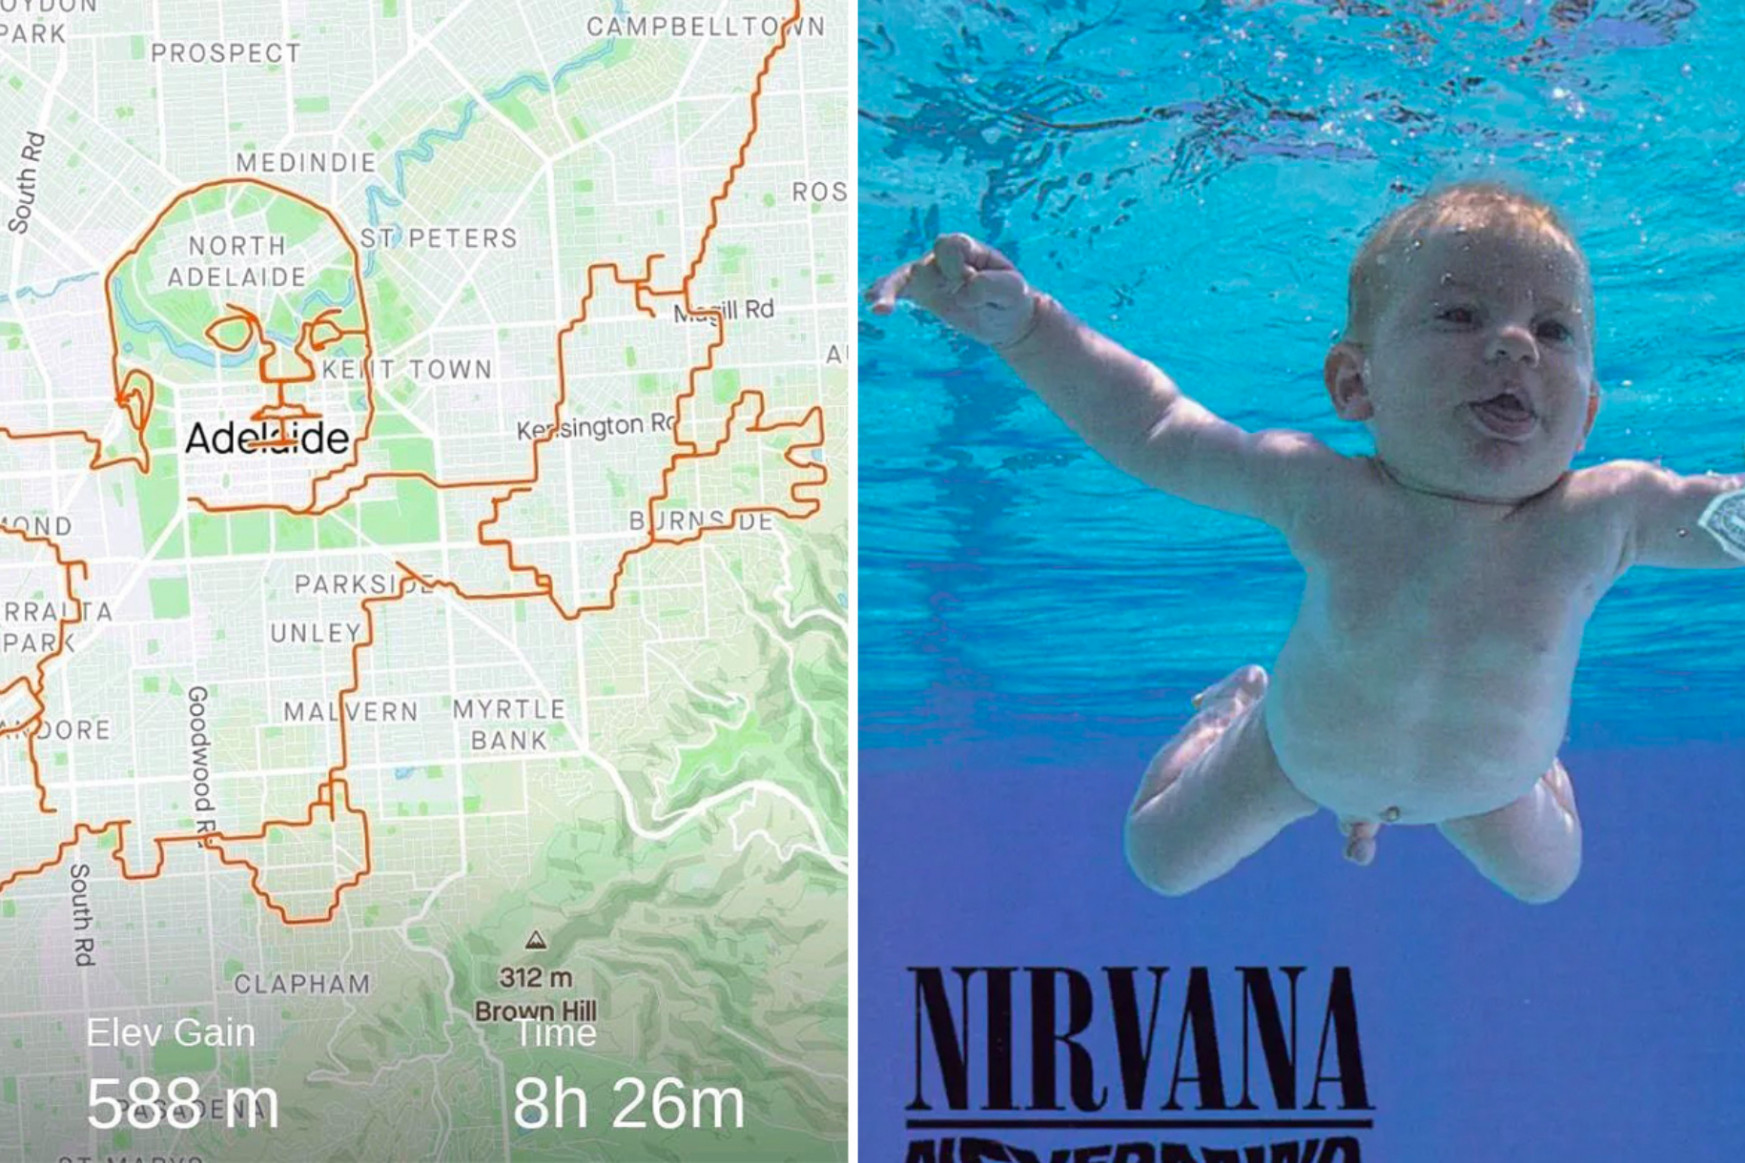 150 kilométer biciklizéssel rajzolta fel a térképre egy ausztrál férfi a Nirvana legendás lemezborítóját